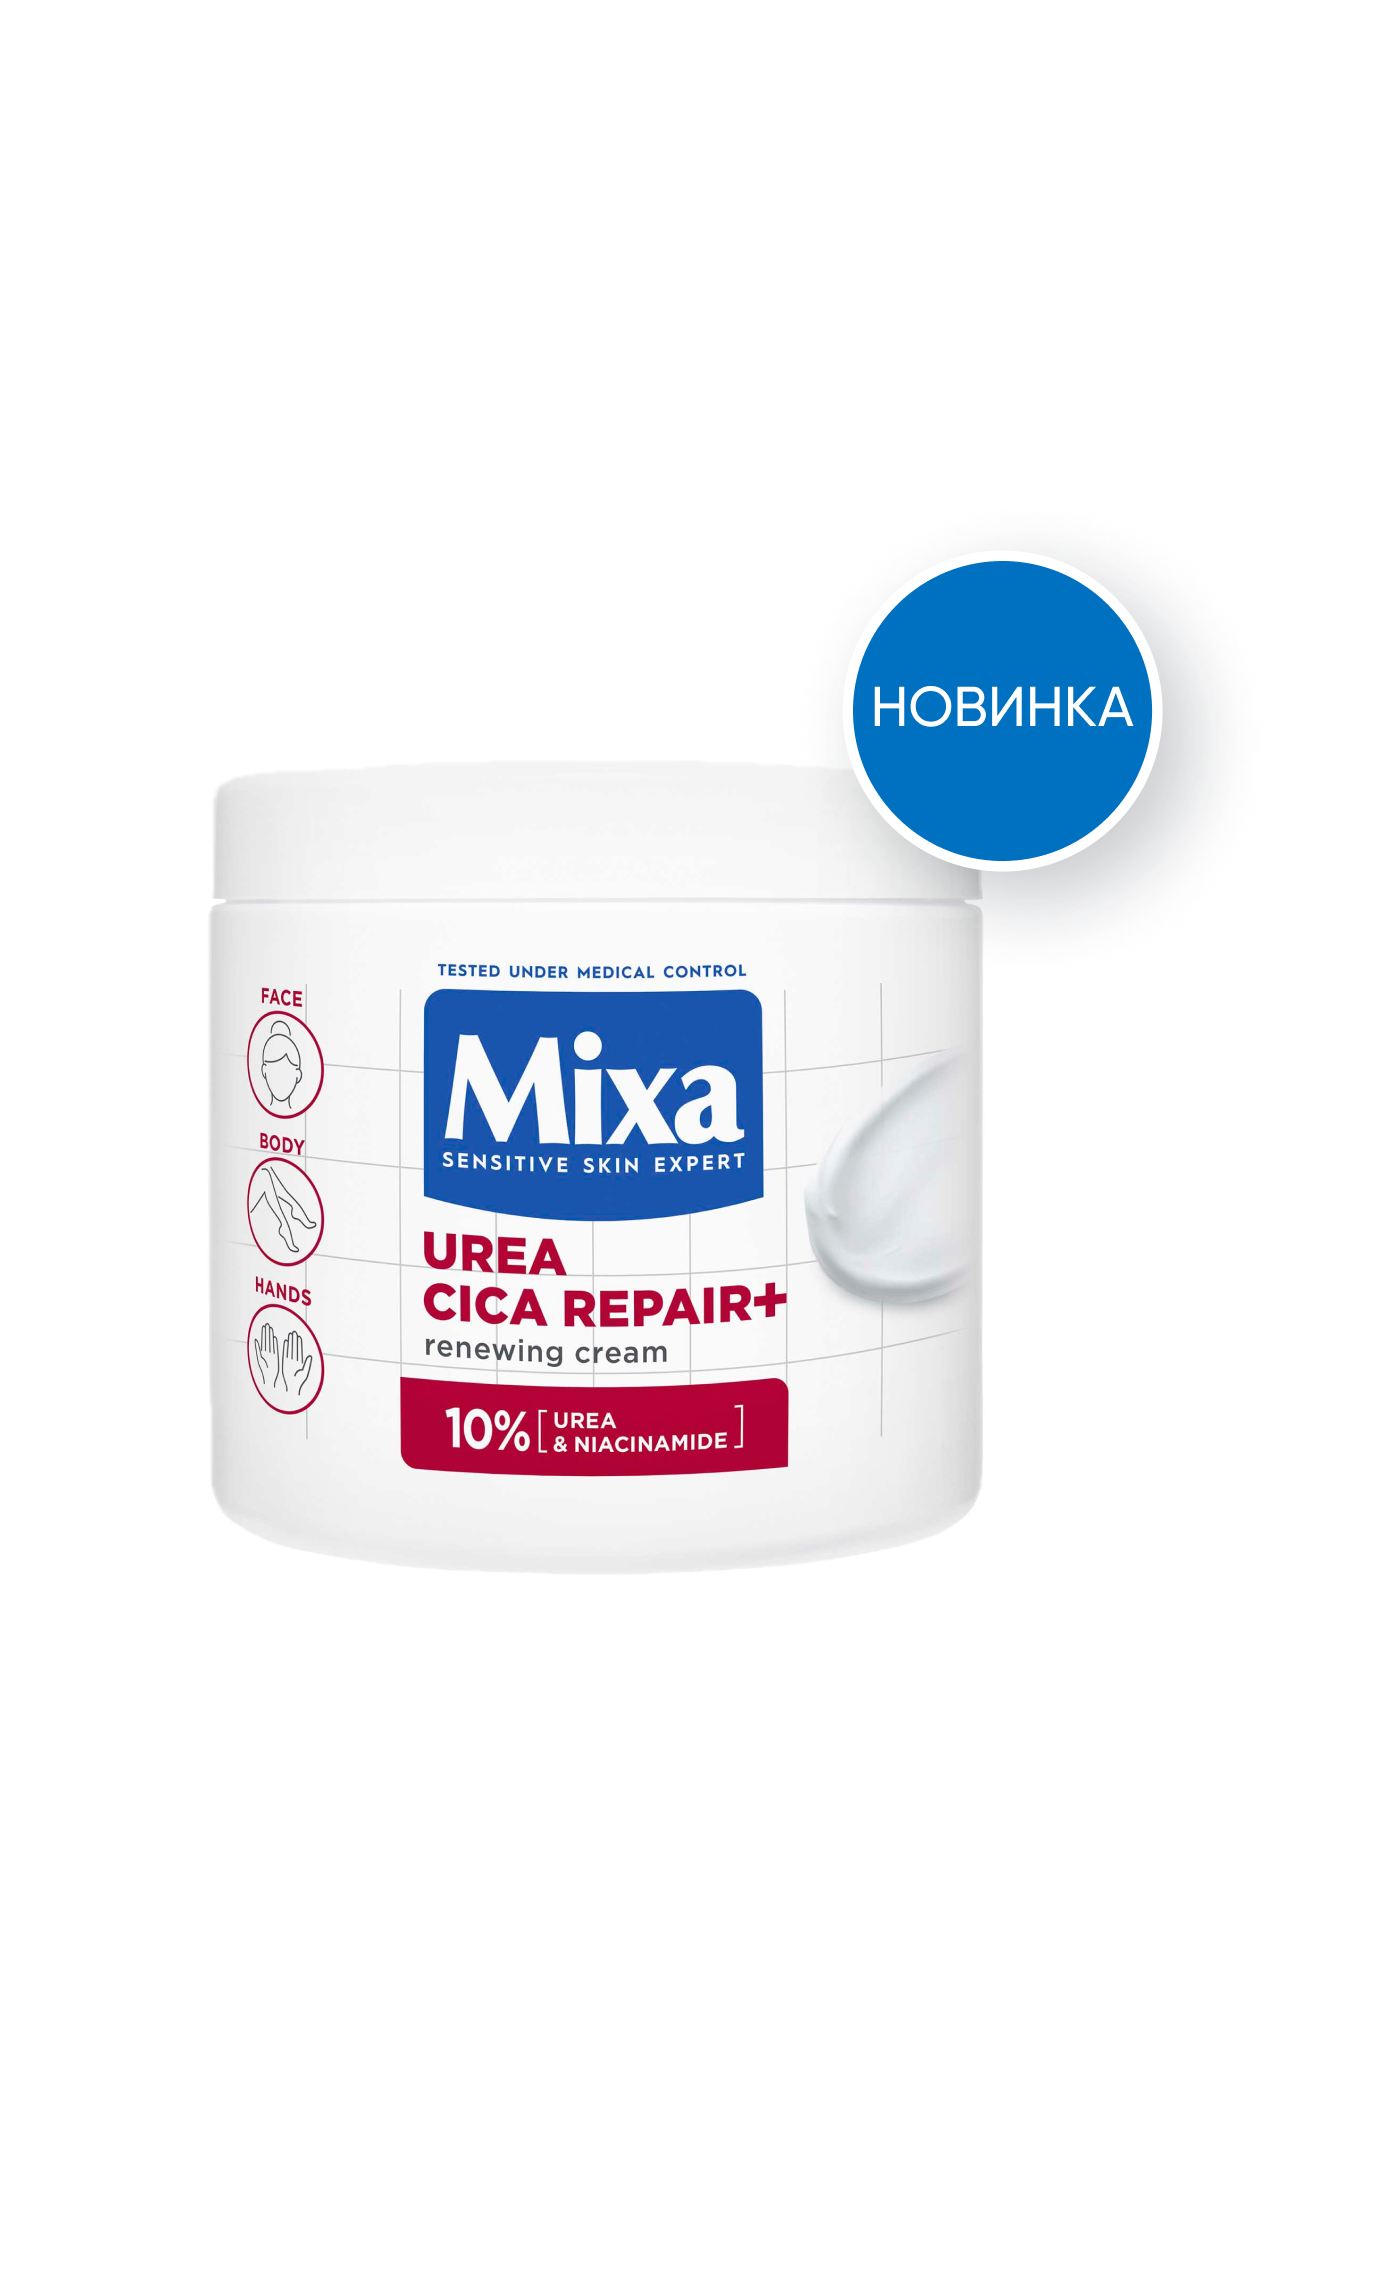 Mixa Восстанавливающий цика-крем с уреей для сухой огрубевшей кожи лица, рук и тела